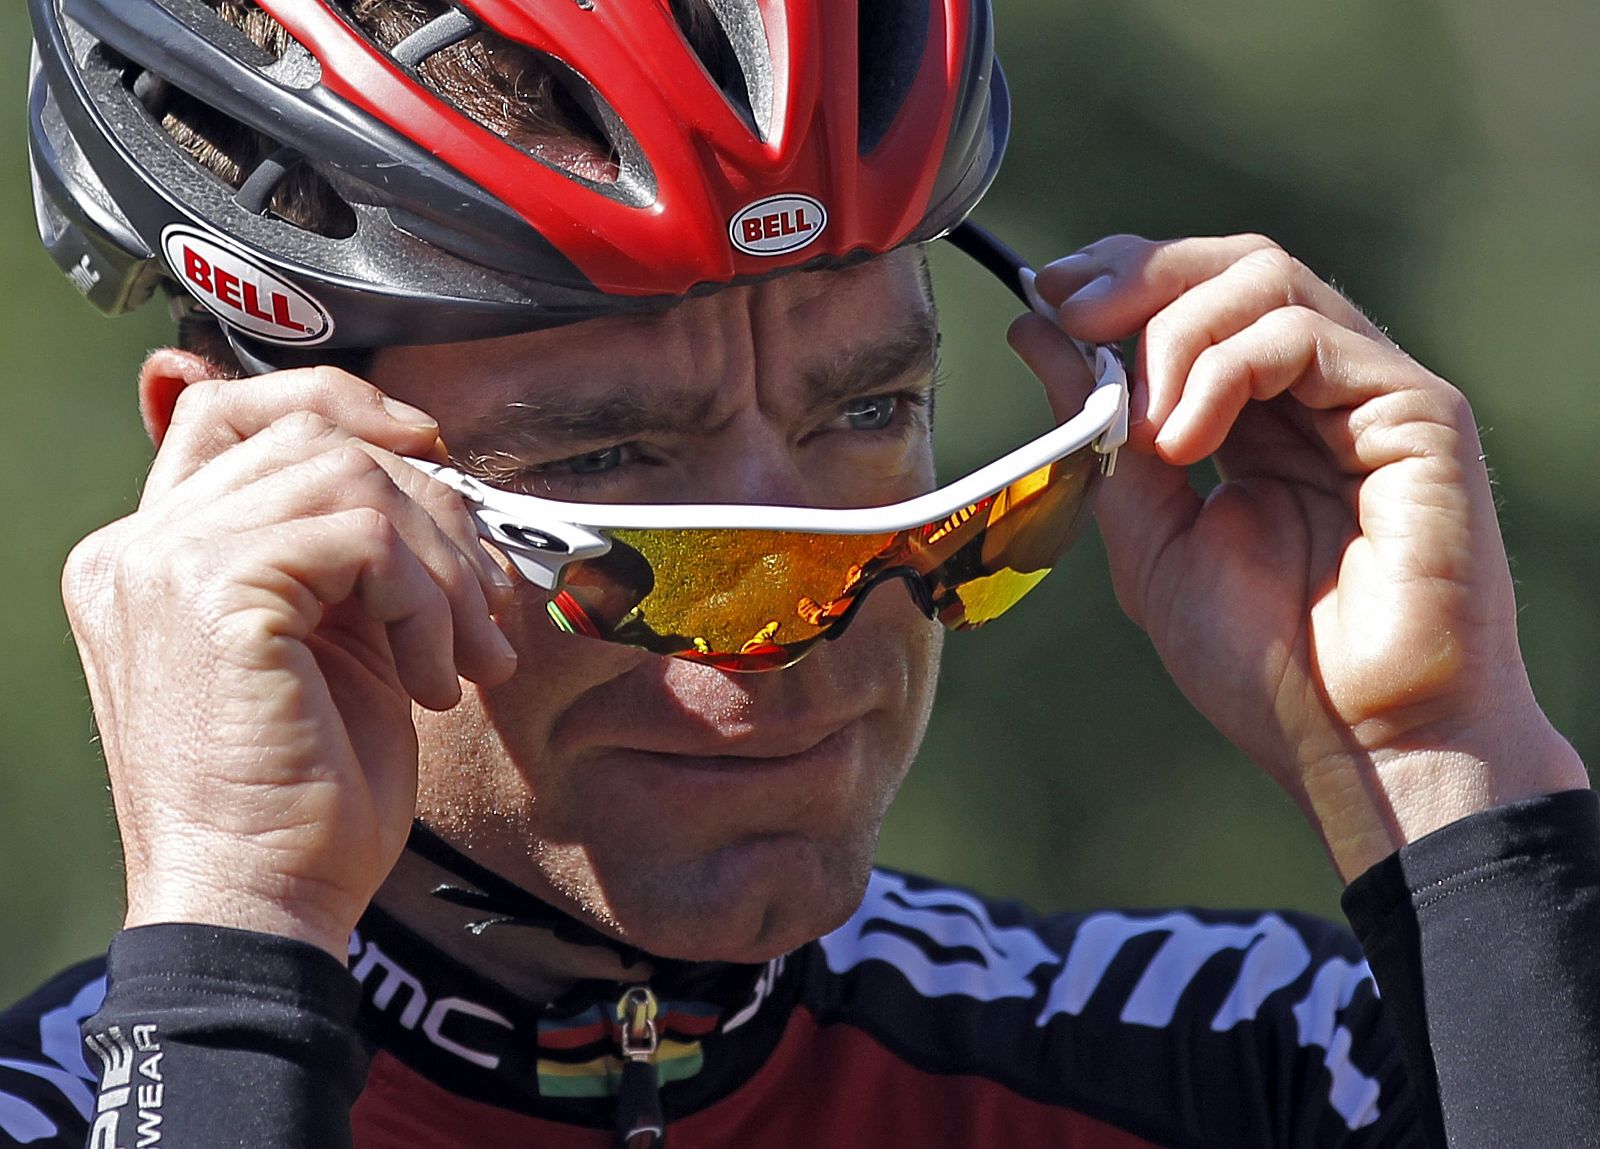 Evans da por terminadas sus aspiraciones en el Tour de Francia 2012 y se situa séptimo en la general.